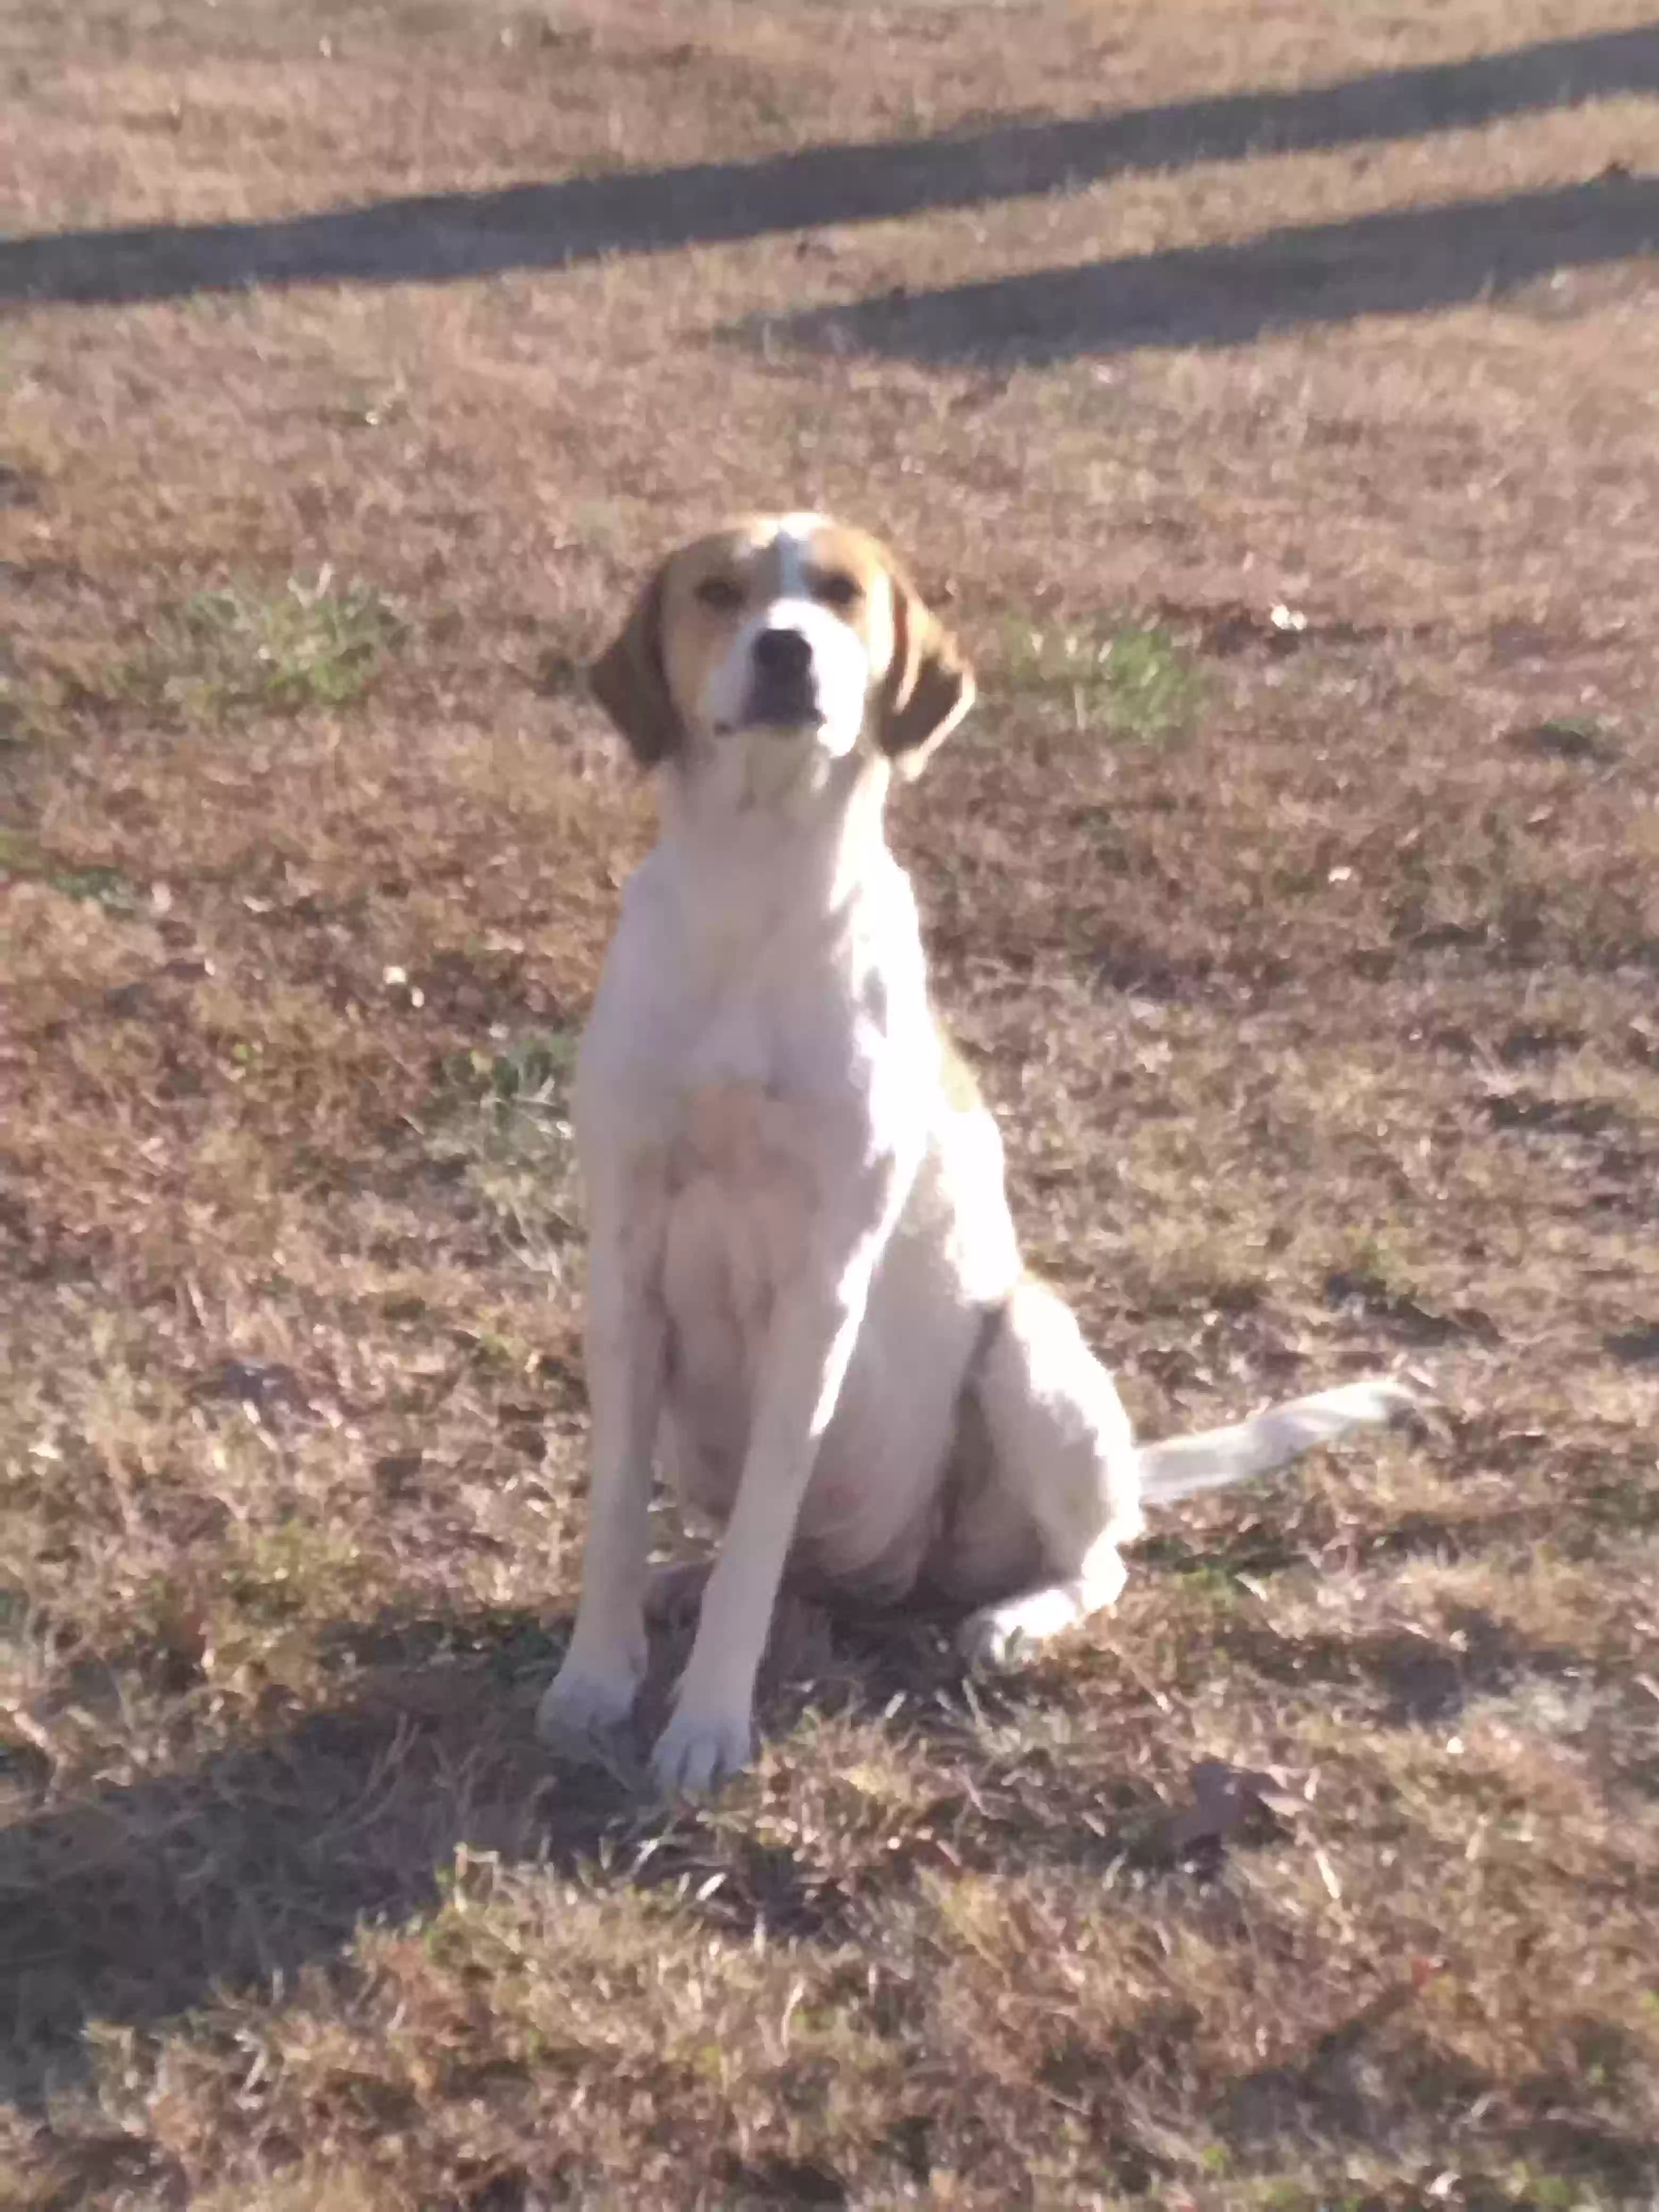 adoptable Dog in Centerville,MO named No. Name